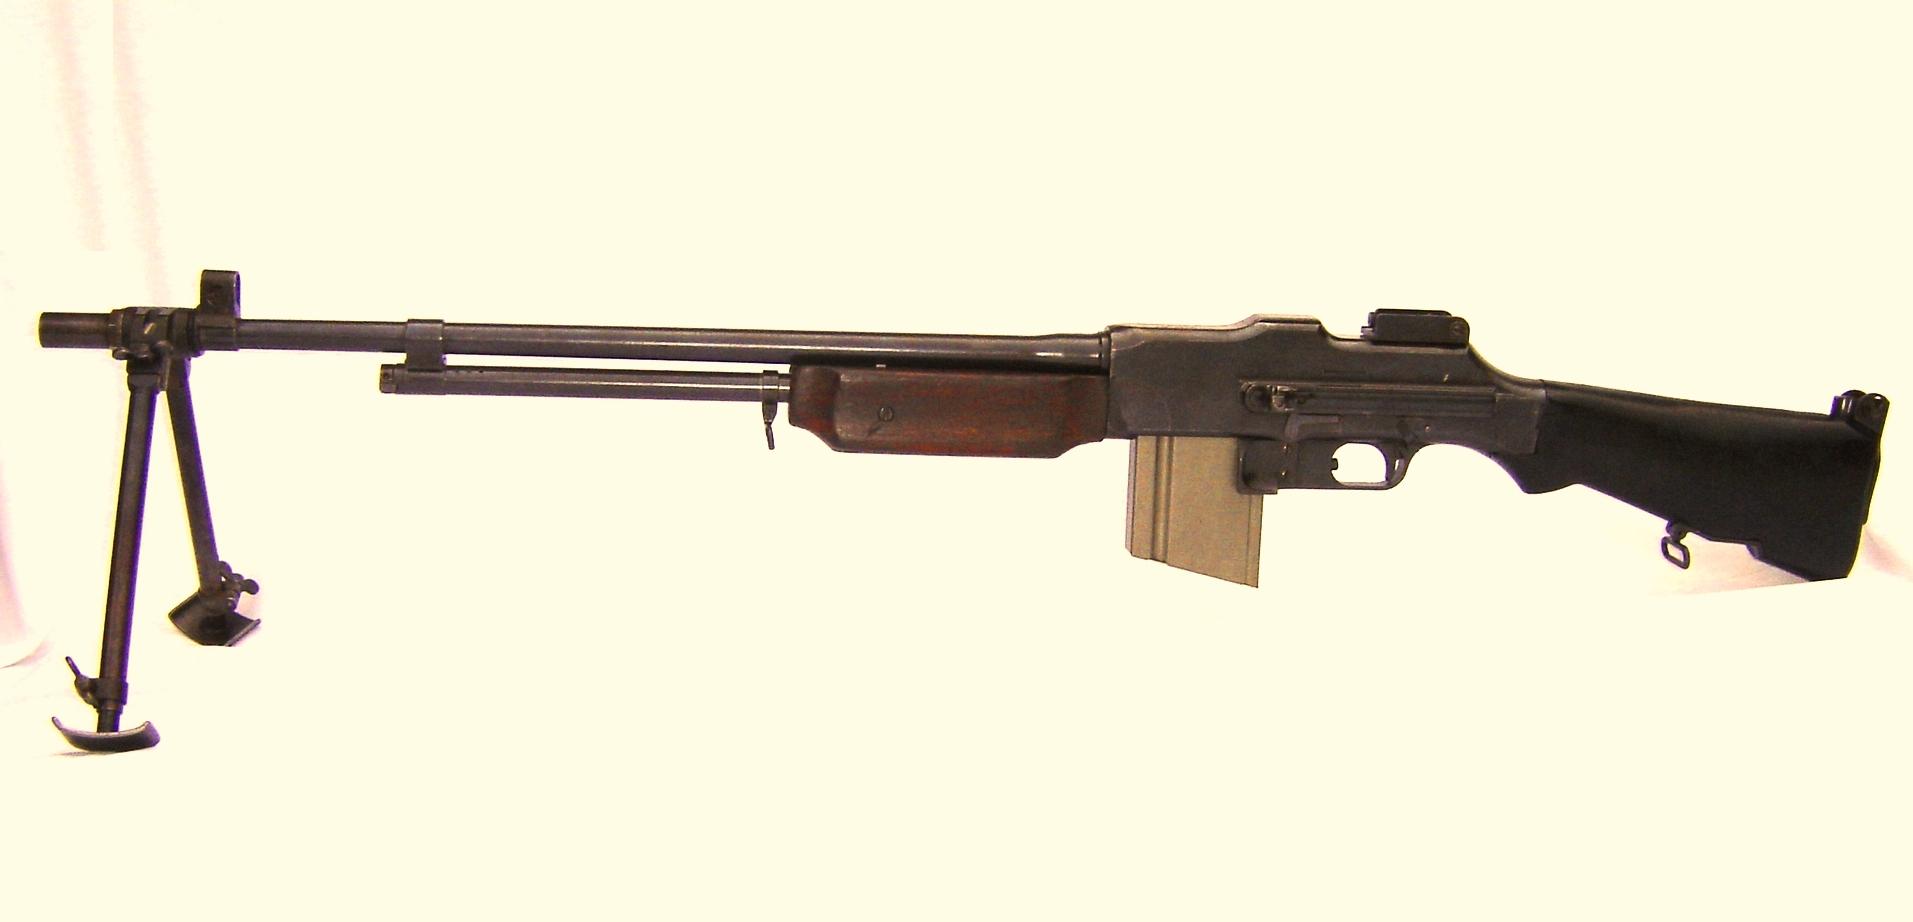 Ручной пулемет Браунинга, в различных источниках имеющий обозначение Browning Automatic Rifle Автоматическая винтовка Браунинга, или Browning Aassault Rifle Штурмовая винтовка Браунинга, сокращенно BAR, являлся одним из тех типов оружия, которые невозможн